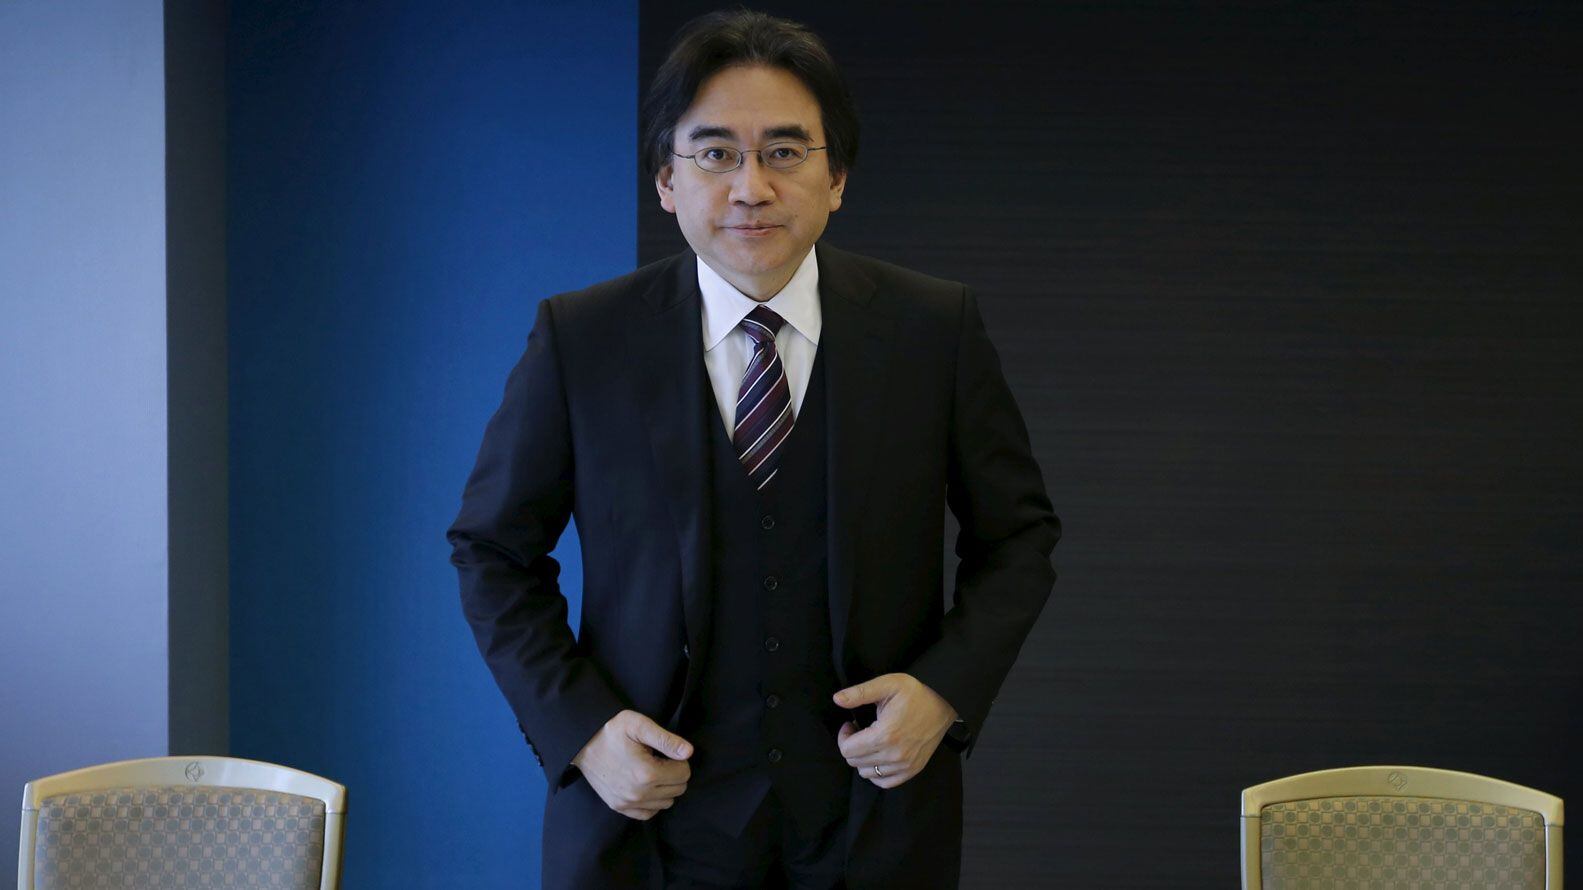 Satoru Iwata destaco por su visión y ética empresarial. (Reuters)